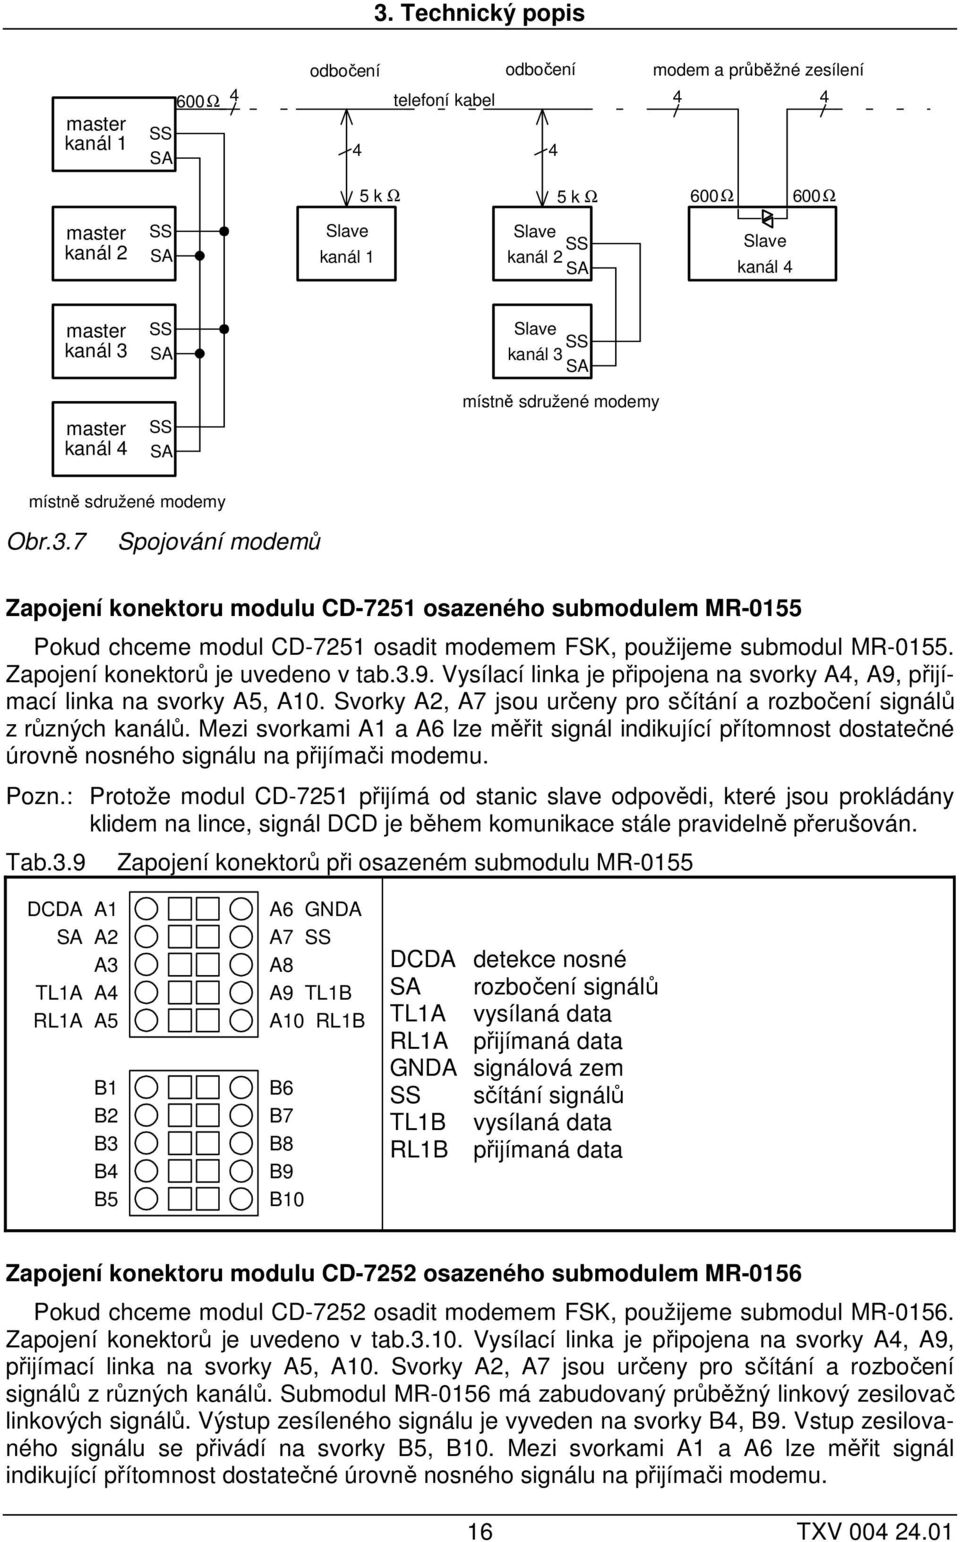 Zapojení konektorů je uvedeno v tab.3.9. Vysílací linka je připojena na svorky A4, A9, přijímací linka na svorky A5, A10. Svorky A2, A7 jsou určeny pro sčítání a rozbočení signálů z různých kanálů.